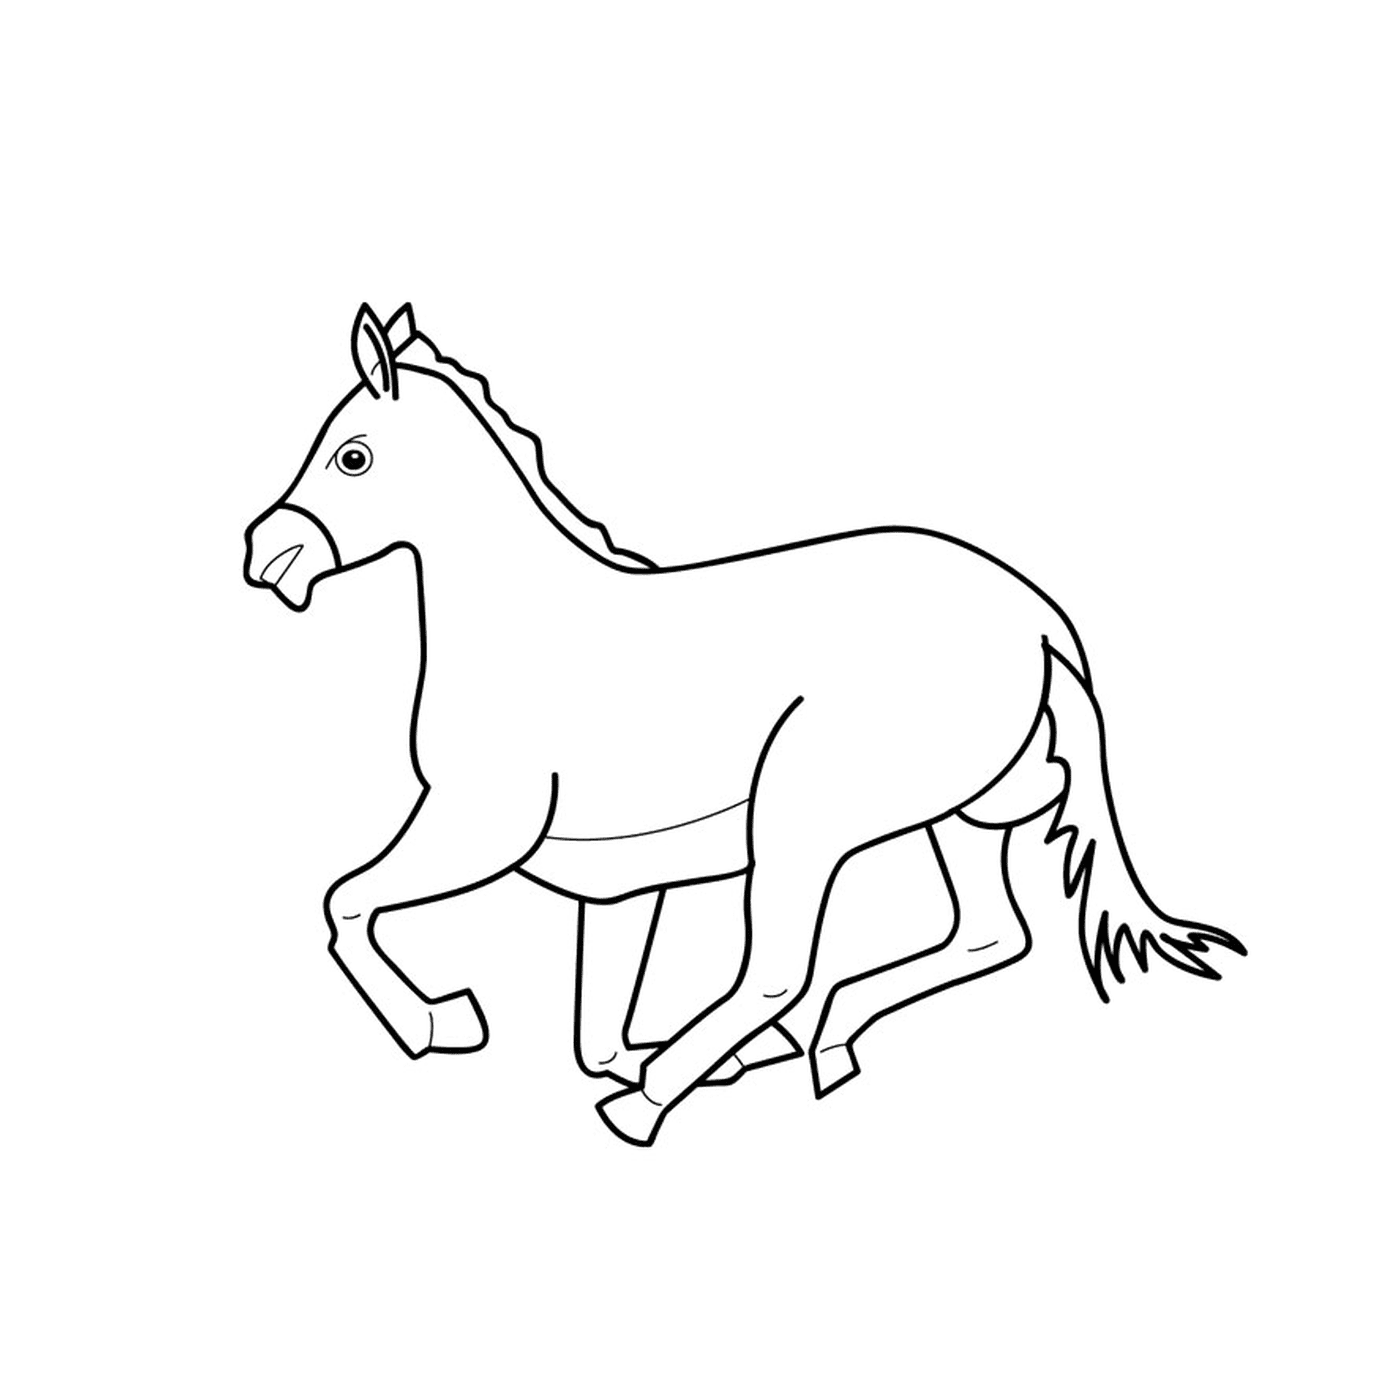  Caballo con galopes - Un caballo corriendo 